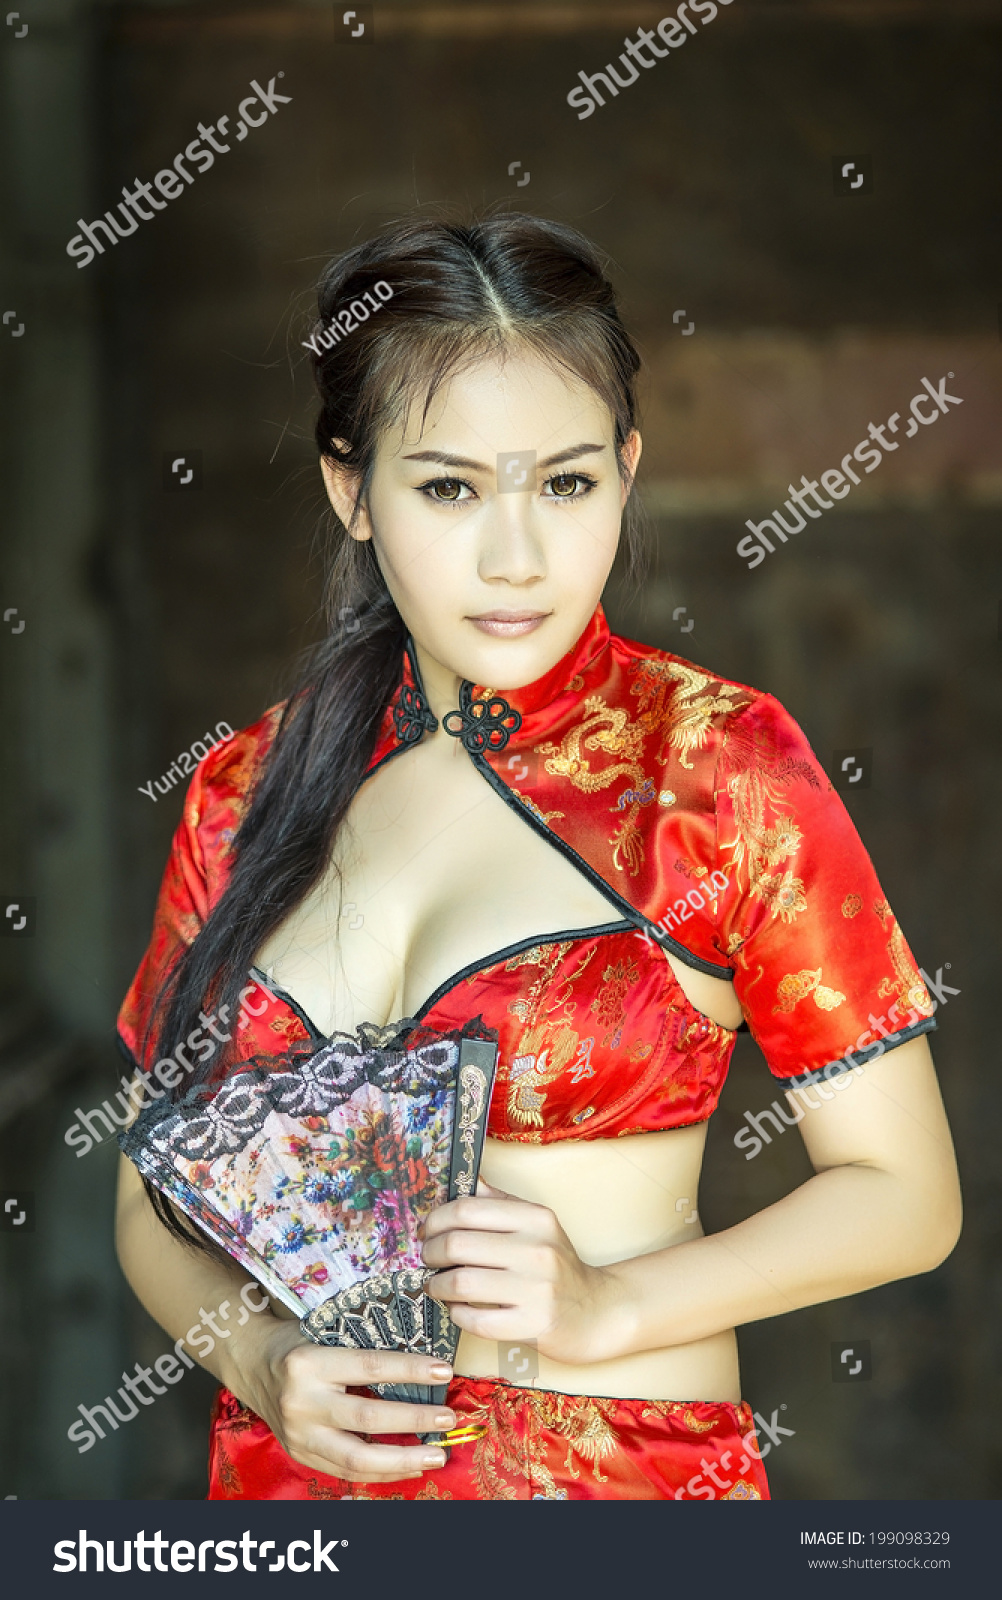 chinese woman sexy